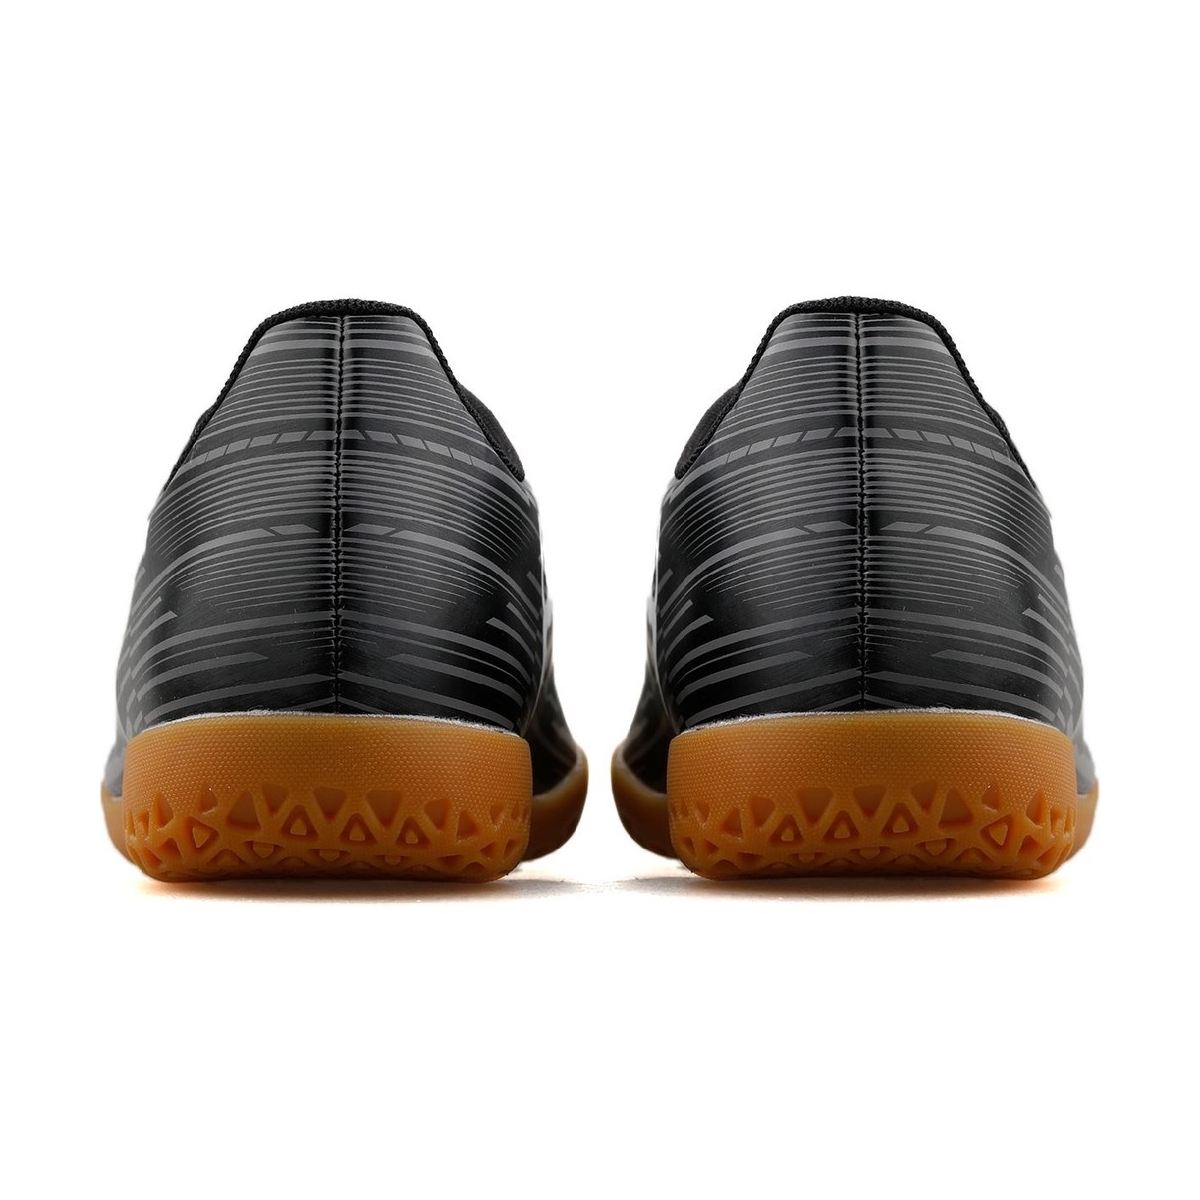 Puma Rapido II Erkek Siyah Kauçuk Salon Ayakkabısı (106575-02)